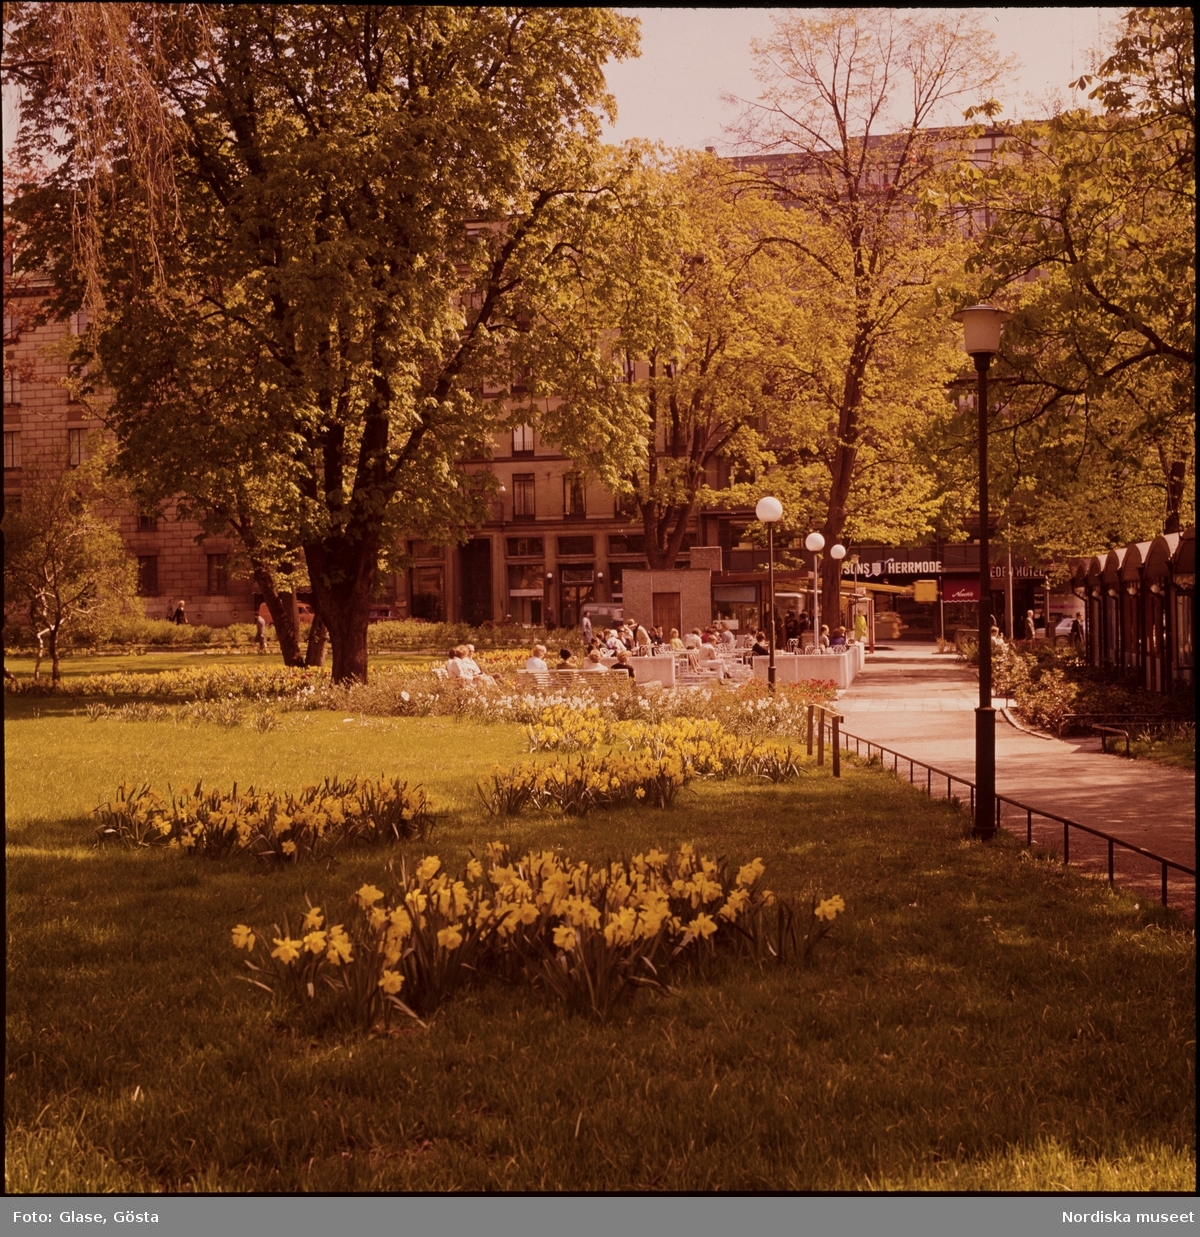 Påskliljor blommar i en park.